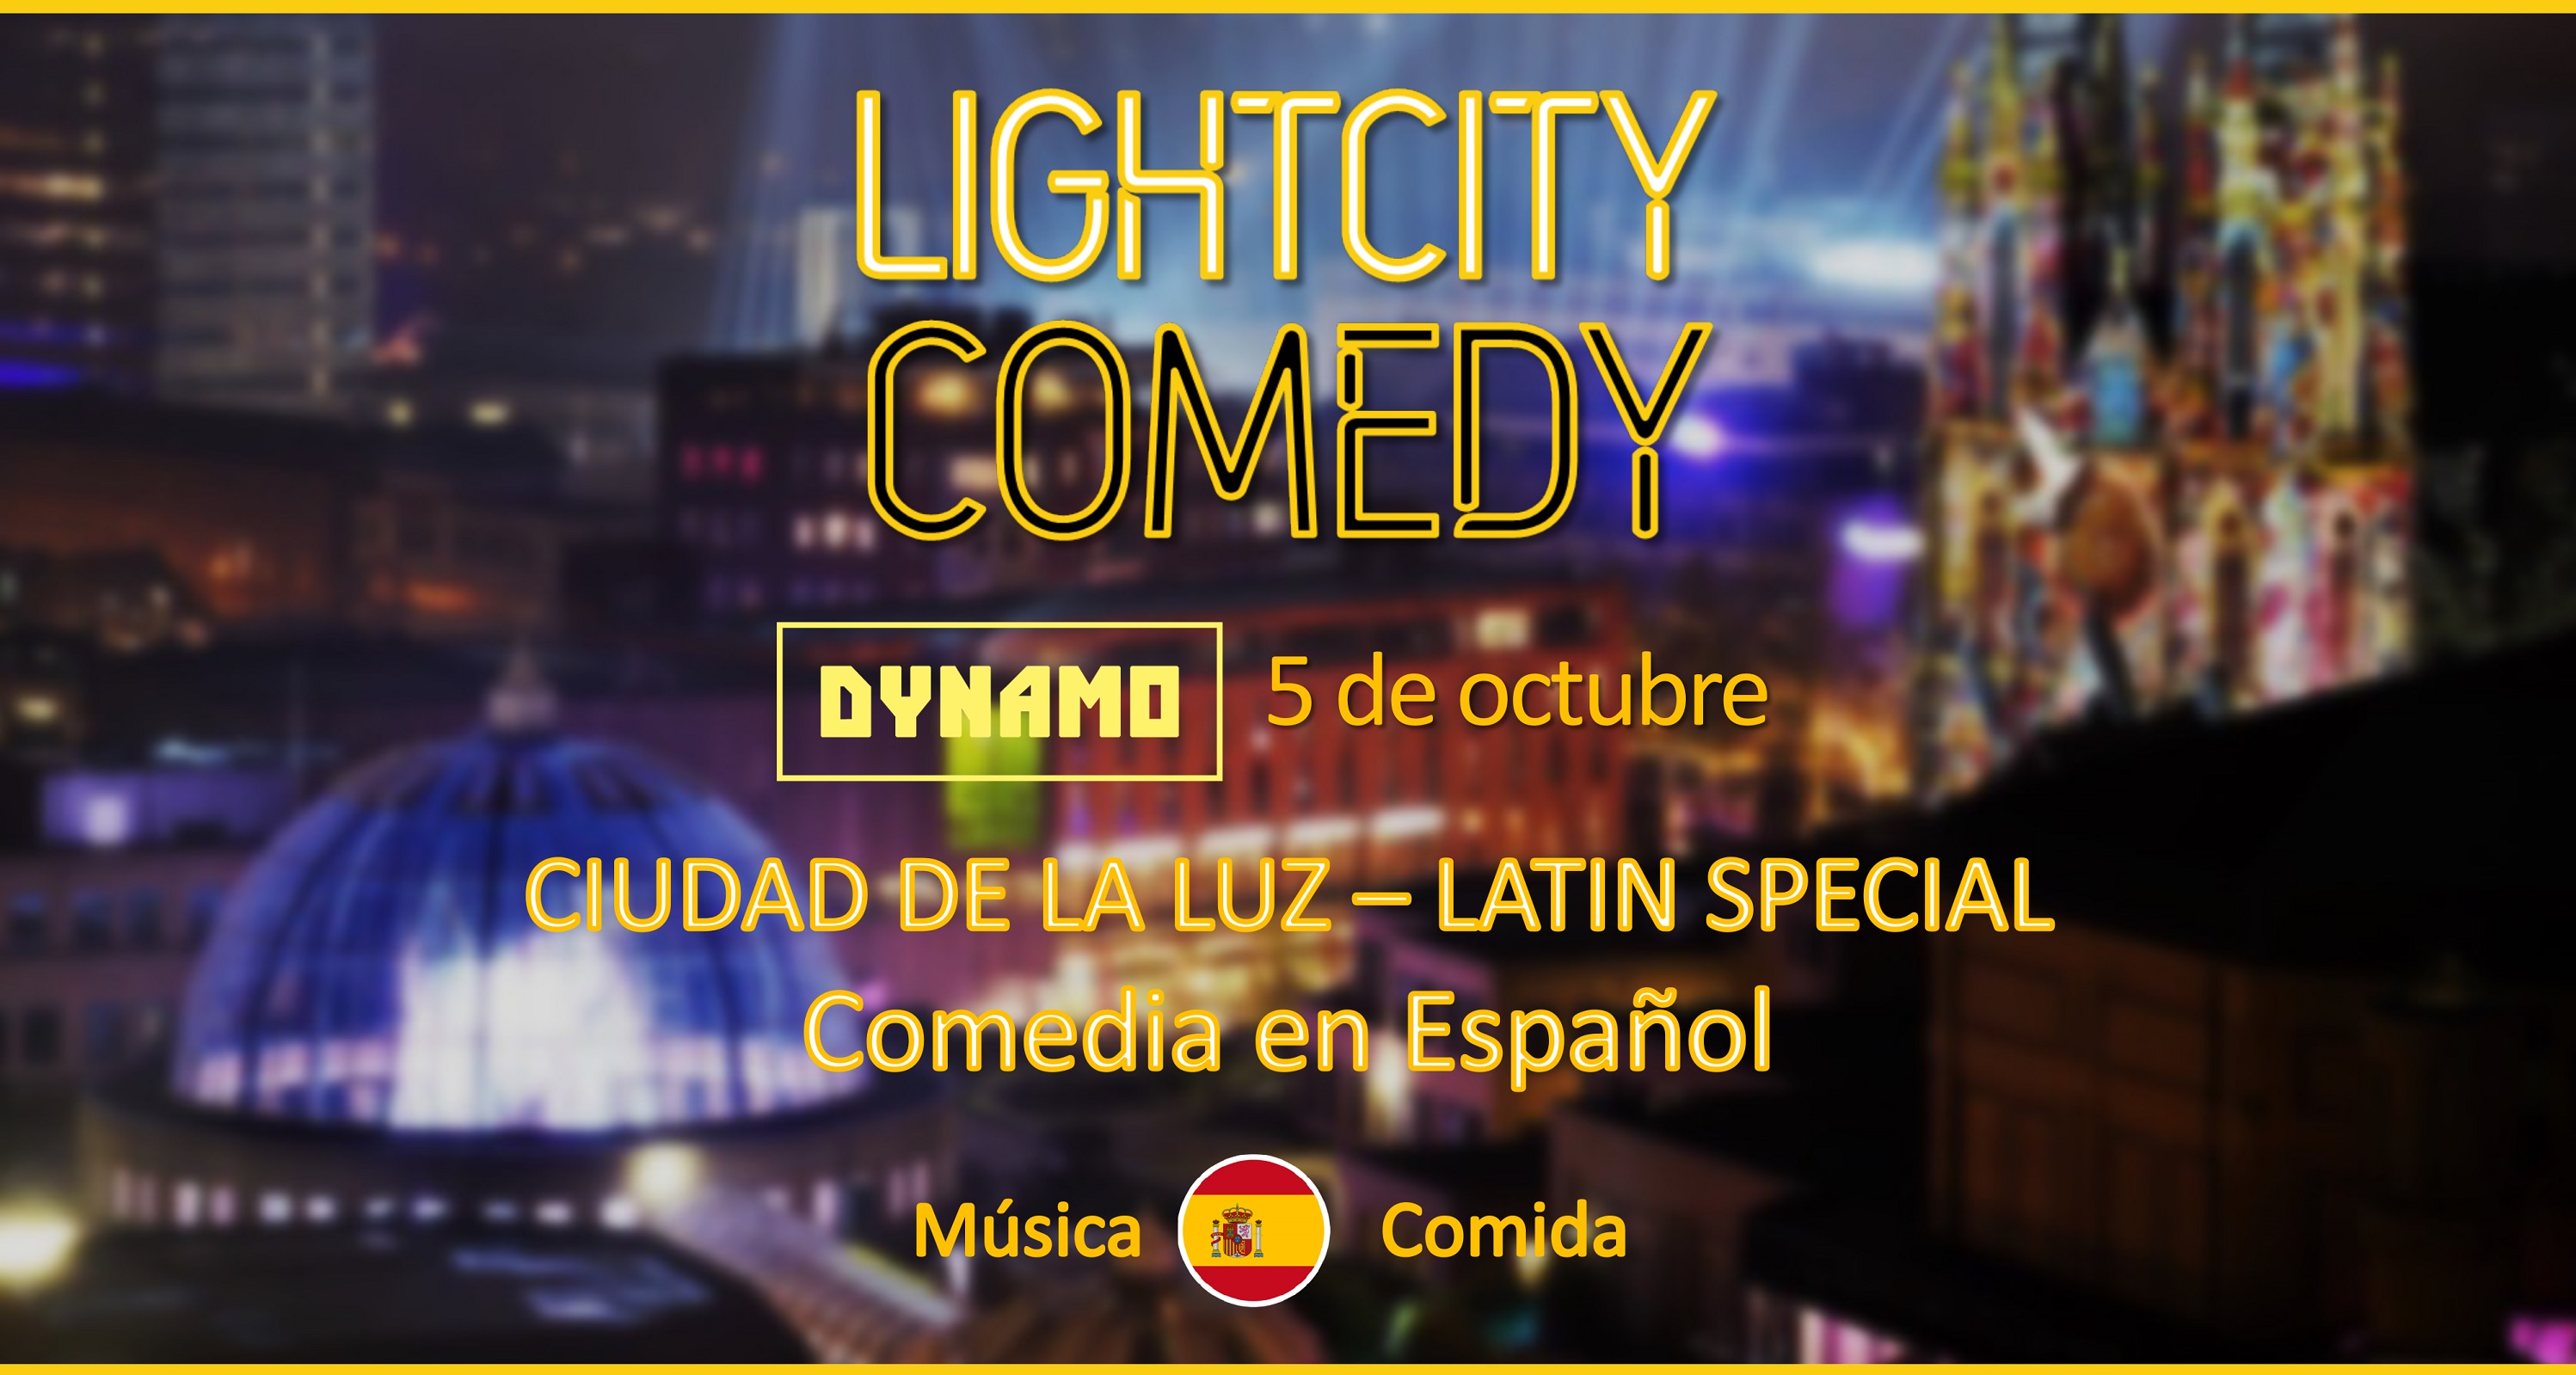 Ticket kopen voor evenement Ciudad de la Luz Comedia